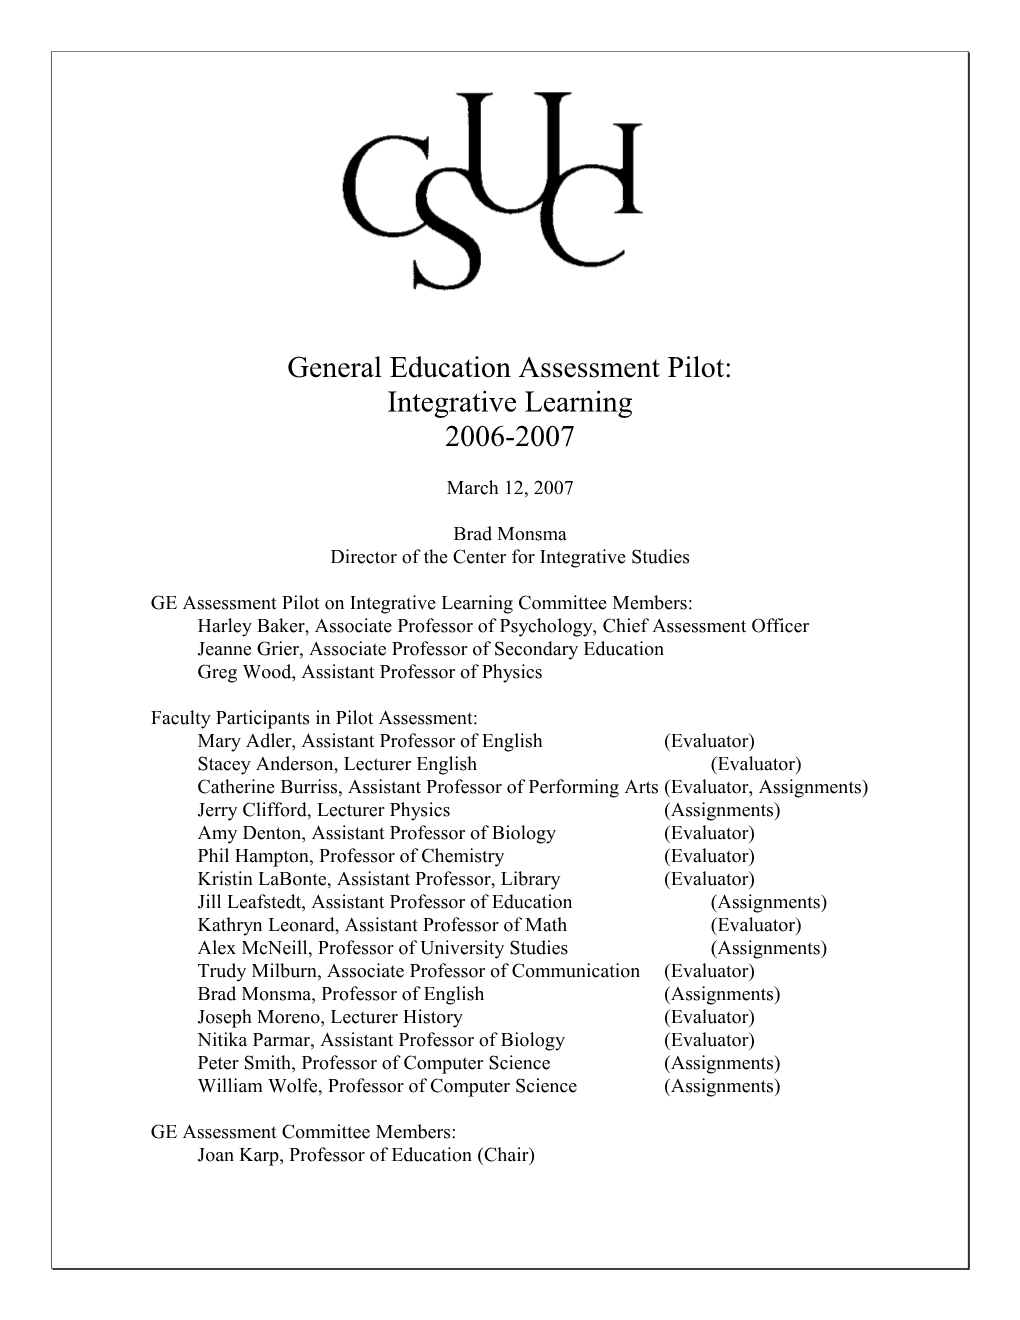 Report GE Pilot Assessment 2006-2007